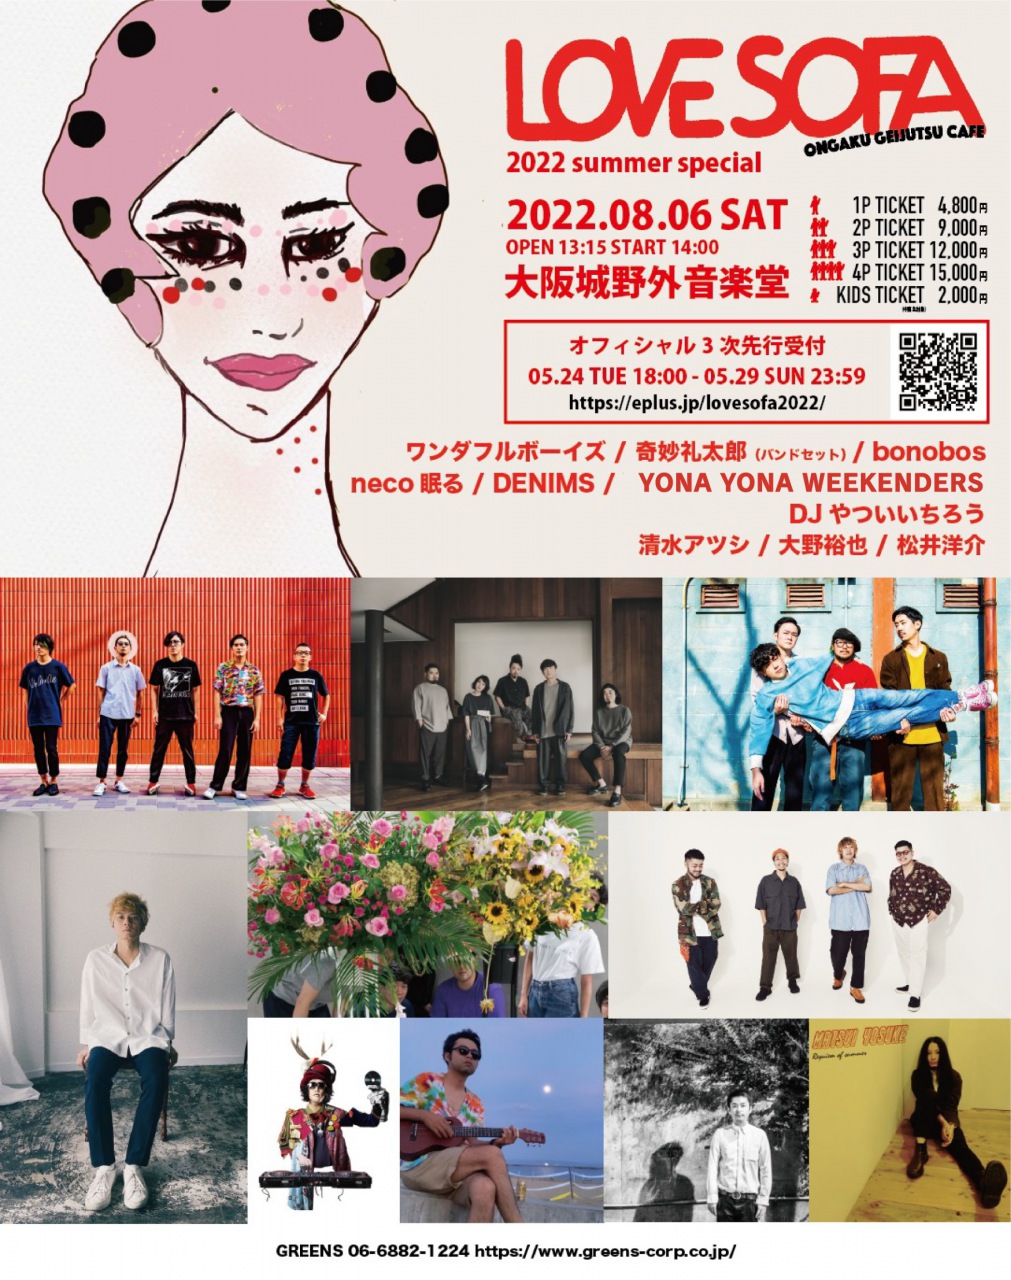 大阪城野音で開催〈Love sofa 2022 summer special〉出演者発表